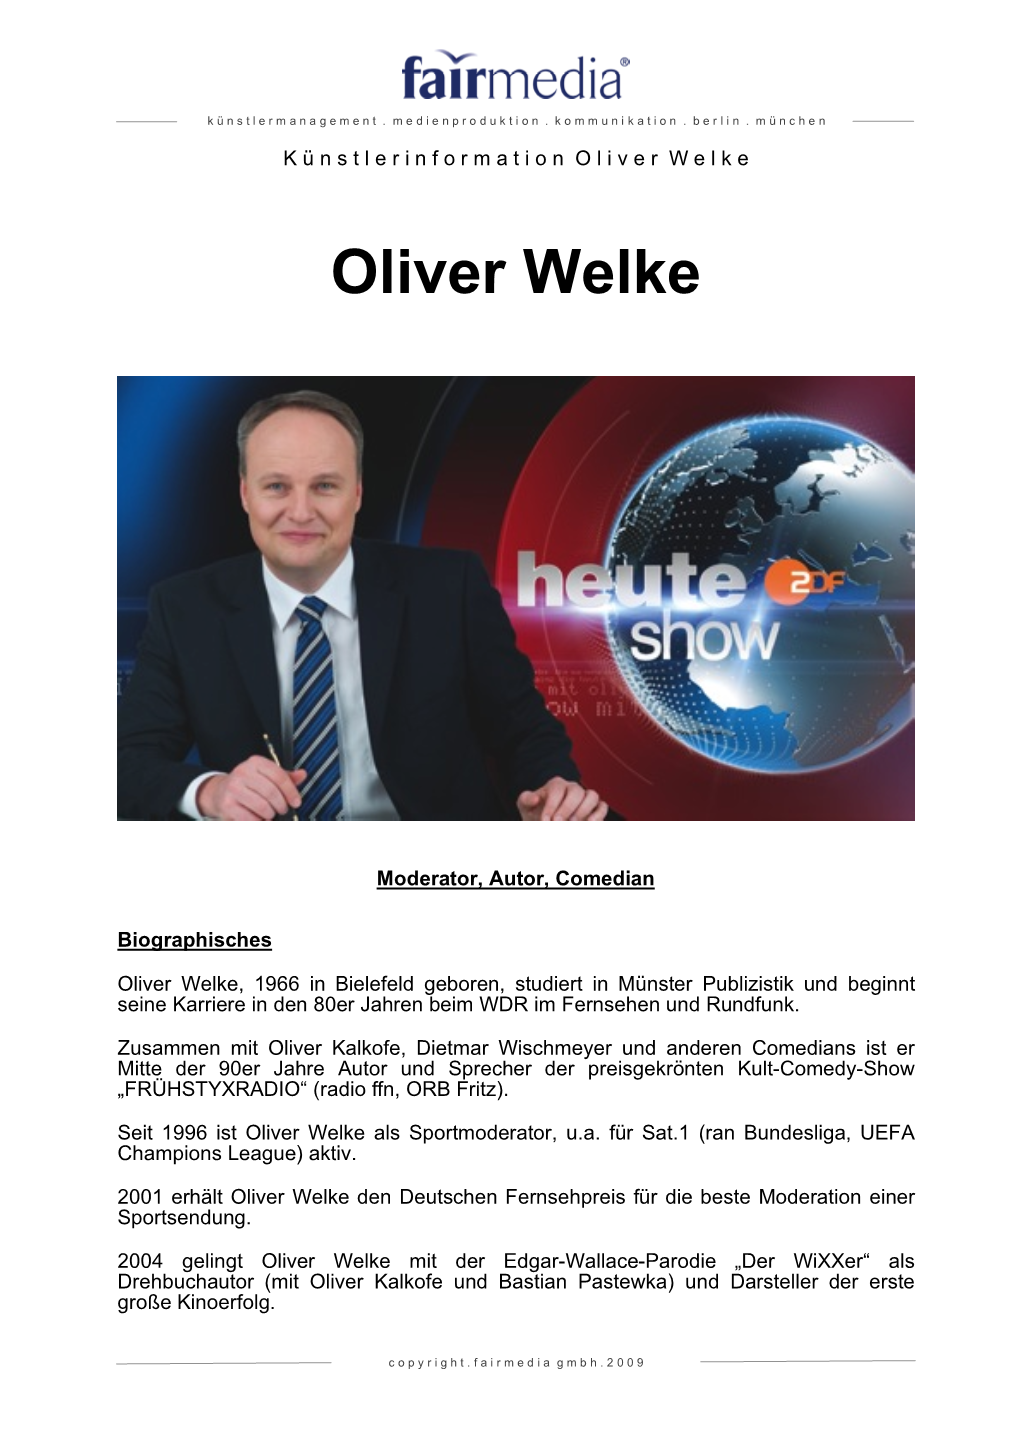 Oliver Welke